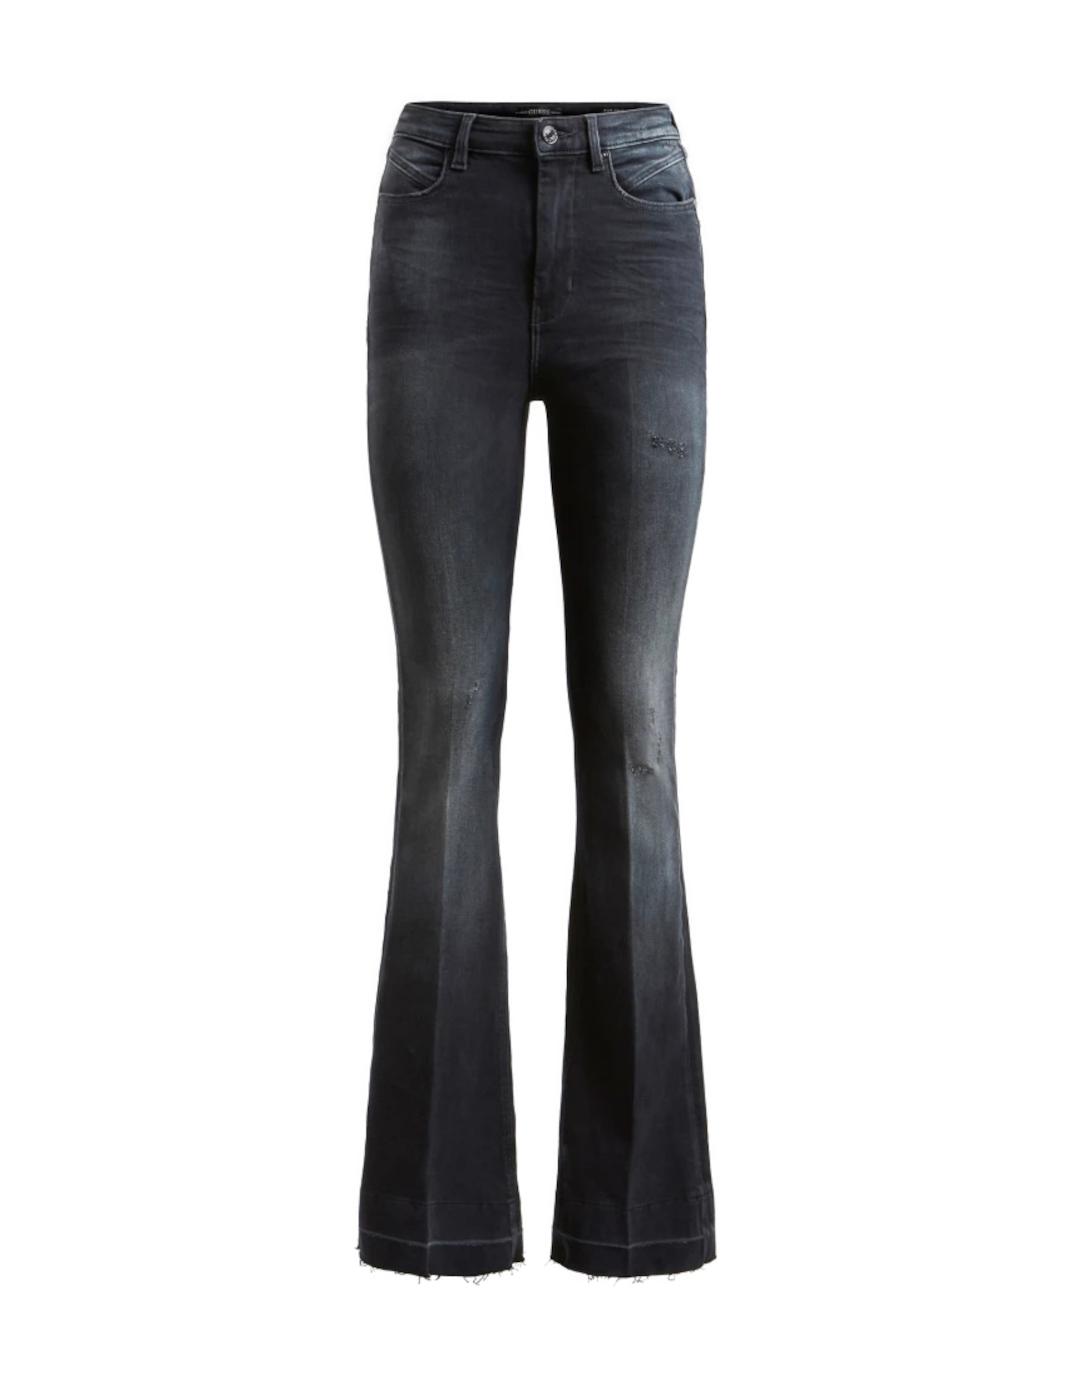 Pantalon Guess pop 70s negro para mujer